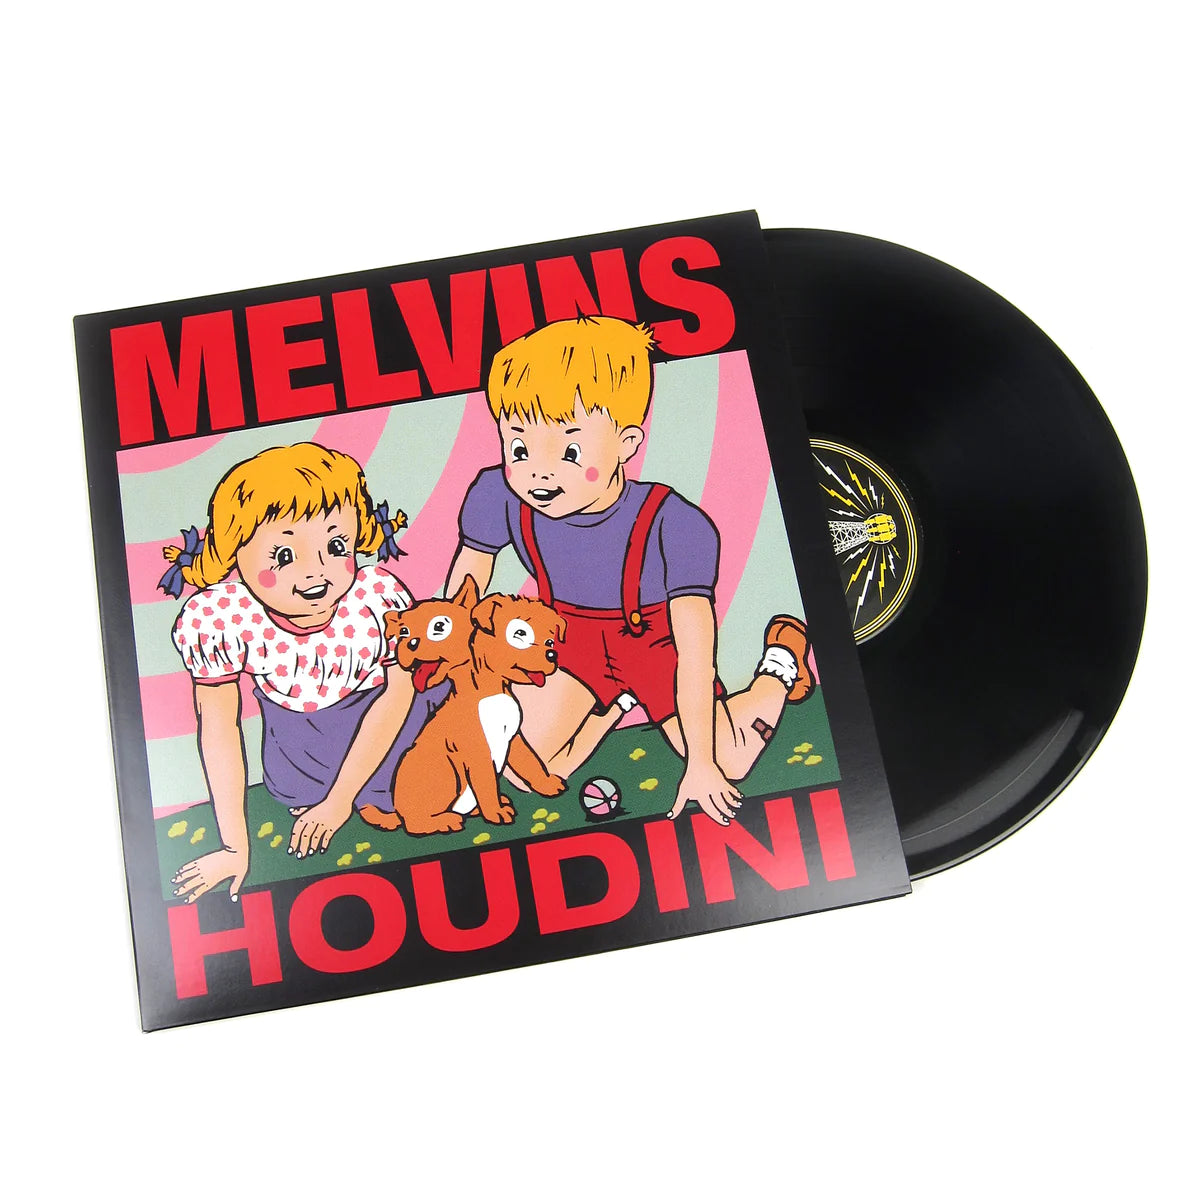 Melvins - Houdini "Reissue" (180g Black Vinyl)